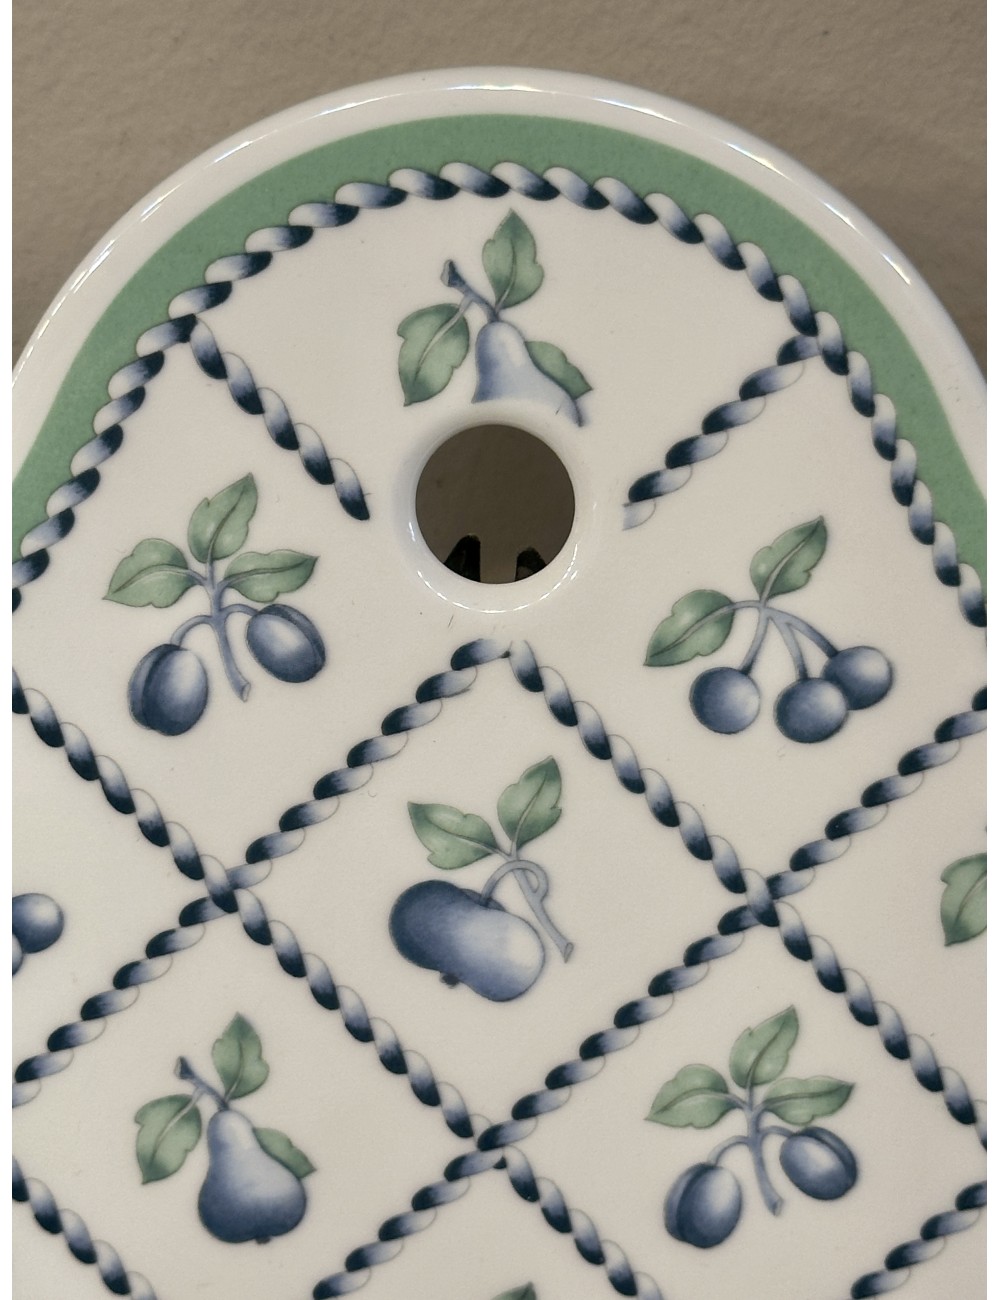 Deskundige Lui Goed opgeleid Boterhamplank / Snijplank - Villeroy & Boch - décor PROVENCE uitgevoerd met  groen en blauw/paarse vruchten versieringen